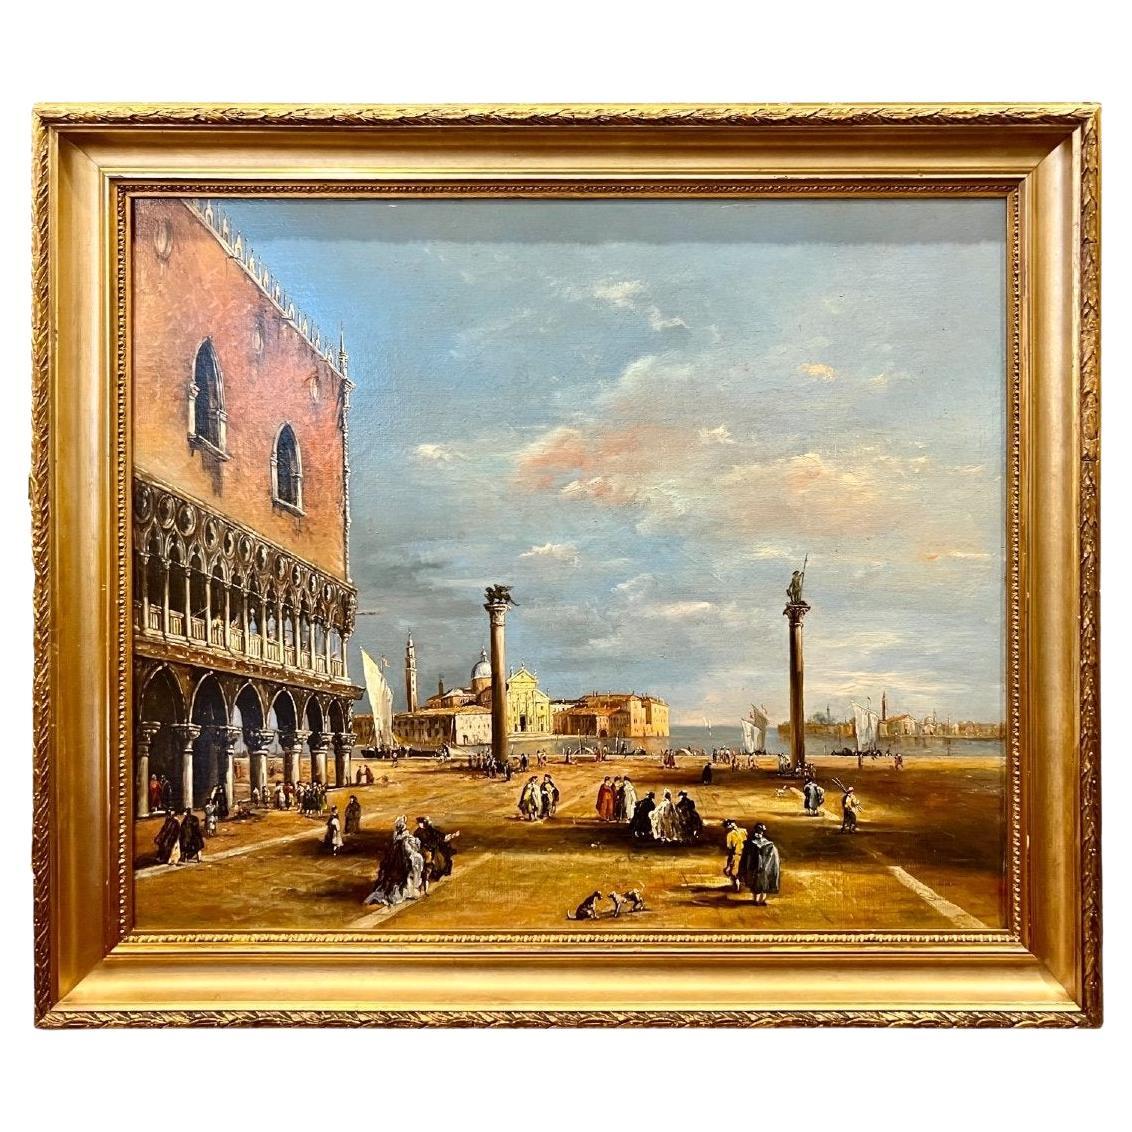 Ölgemälde auf Leinwand von Venedig im Stil von Canaletto aus dem 19. Jahrhundert